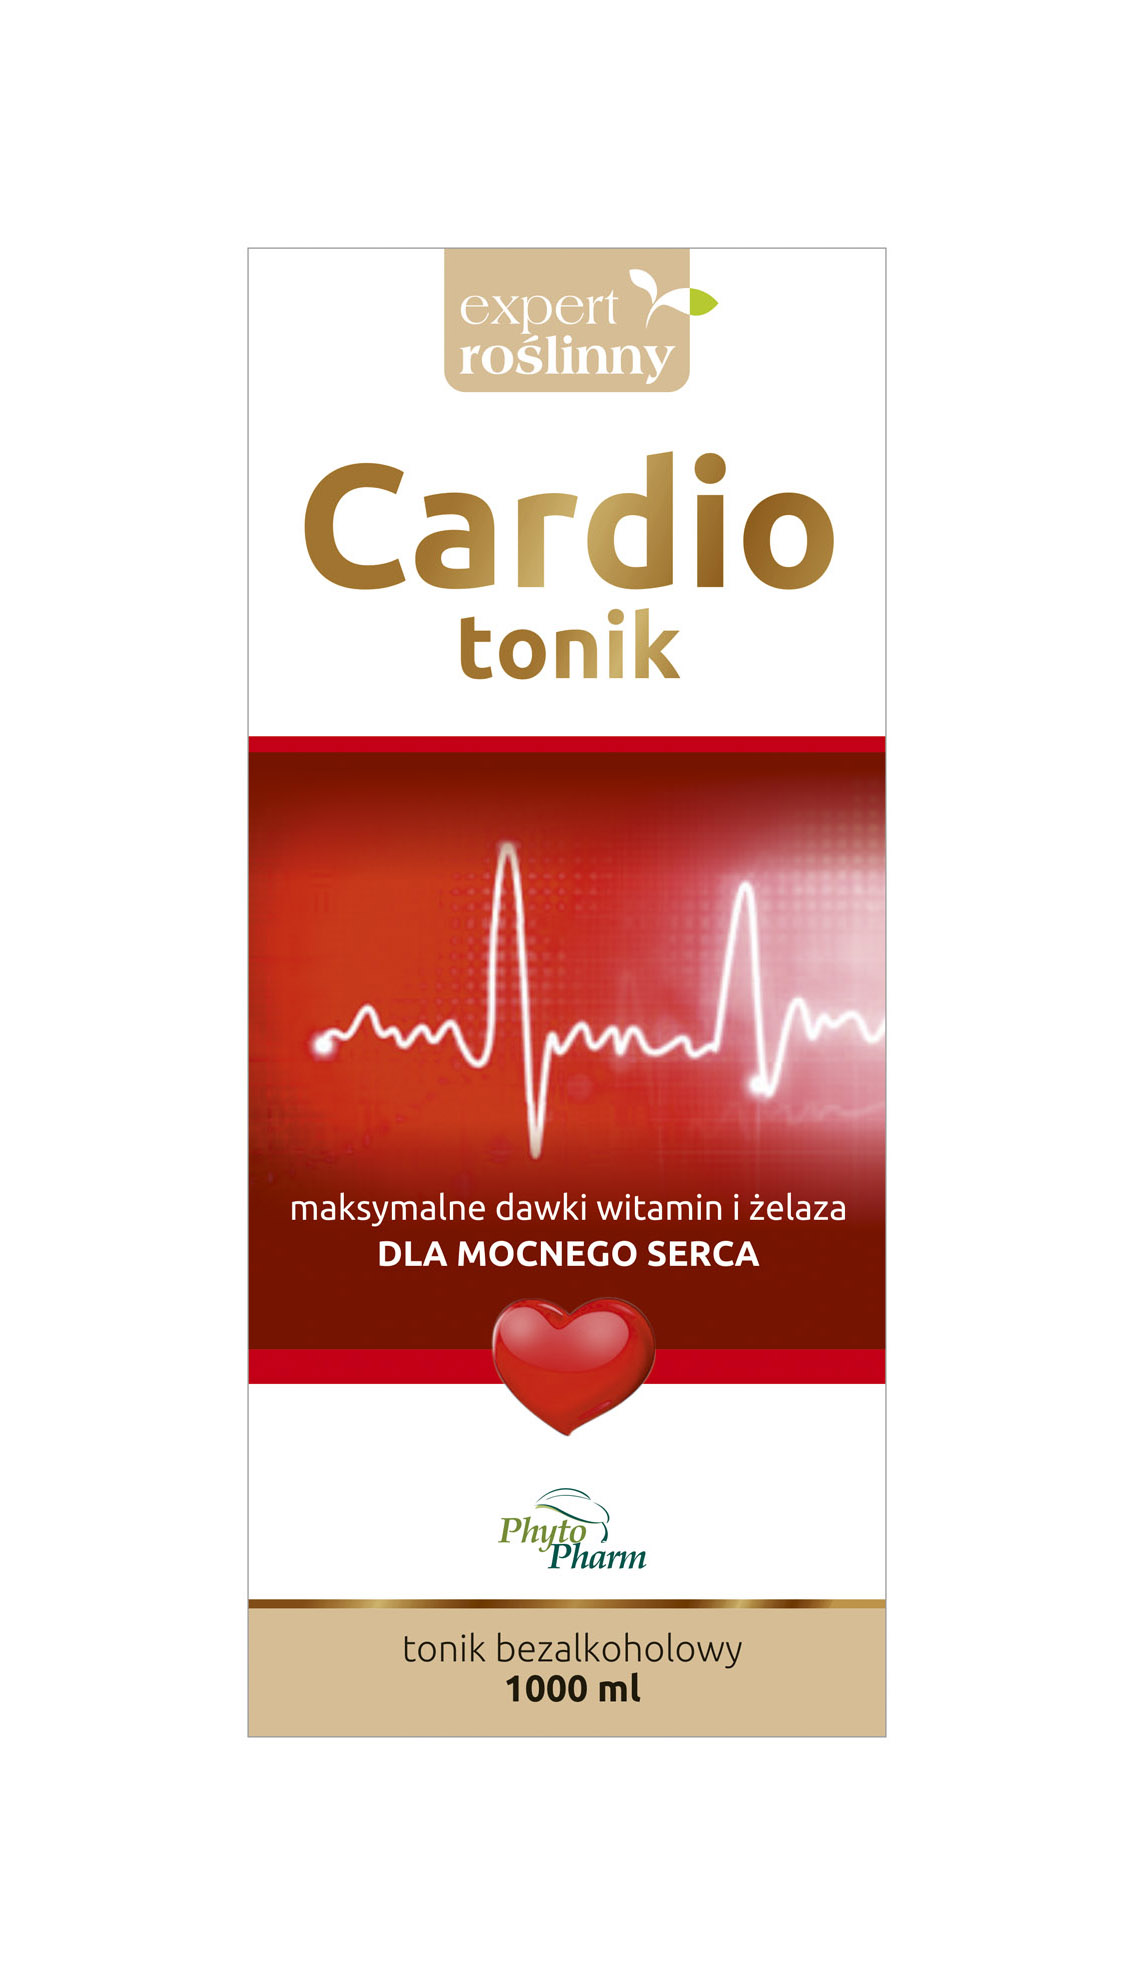 Cardio_tonik_v03B.jpg